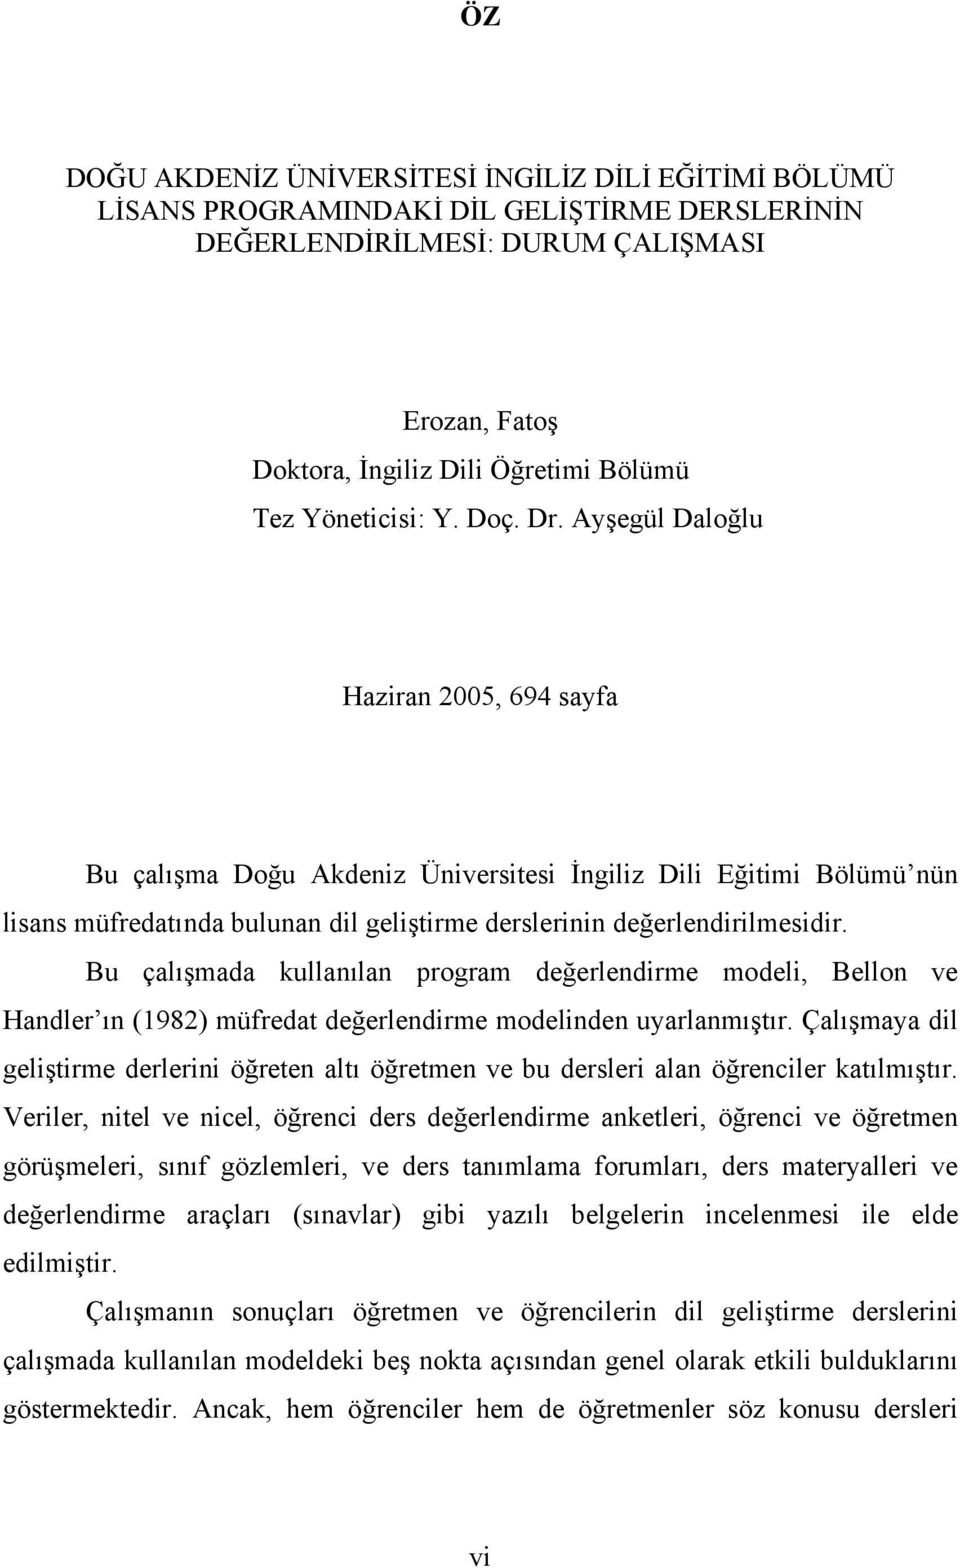 Ayşegül Daloğlu Haziran 2005, 694 sayfa Bu çalışma Doğu Akdeniz Üniversitesi İngiliz Dili Eğitimi Bölümü nün lisans müfredatında bulunan dil geliştirme derslerinin değerlendirilmesidir.